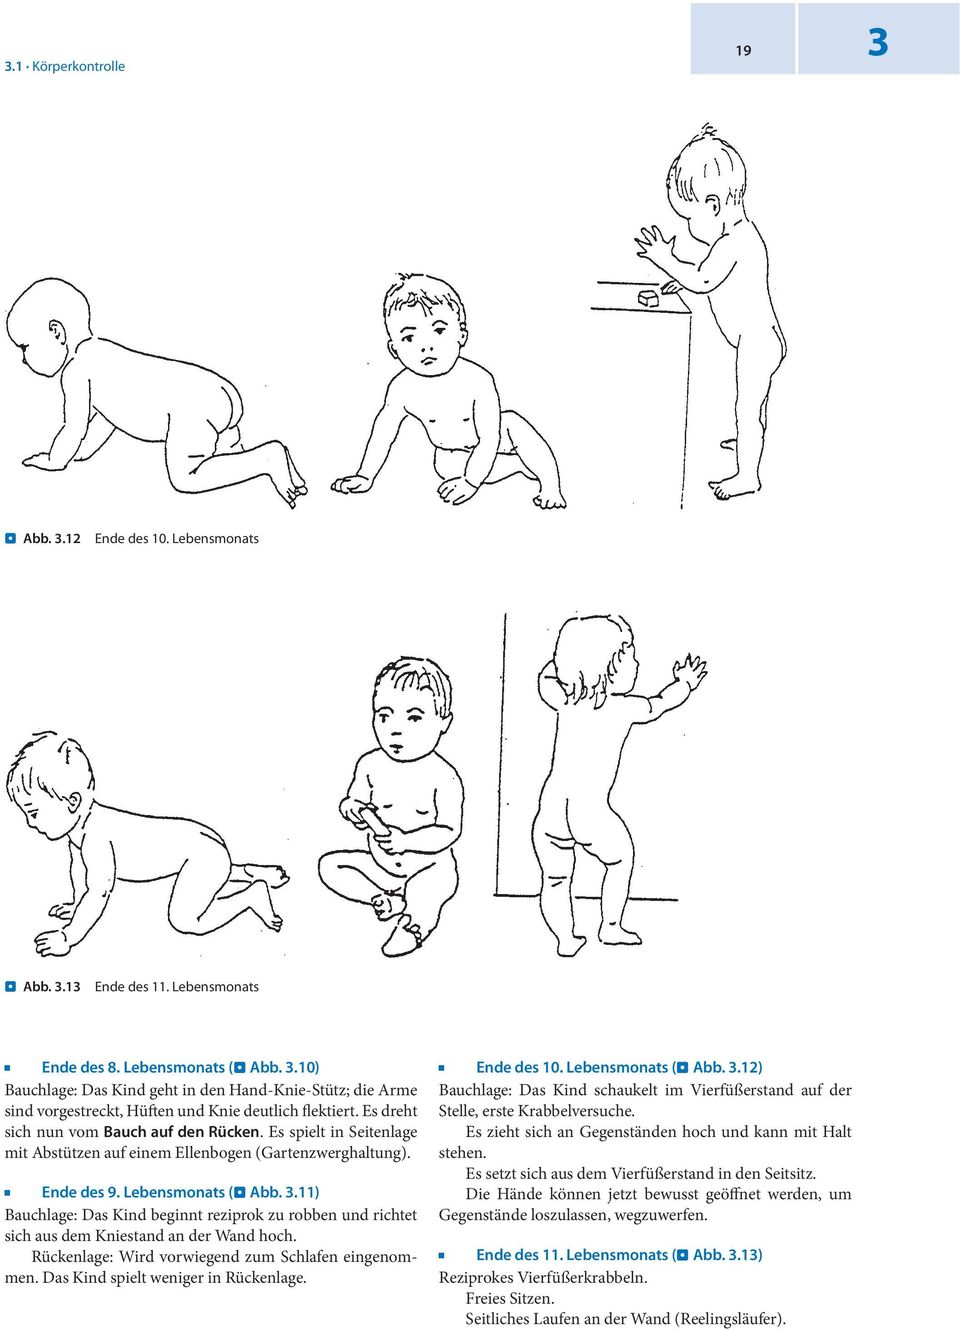 11) Bauchlage: Das Kind beginnt reziprok zu robben und richtet sich aus dem Kniestand an der Wand hoch. Rückenlage: Wird vorwiegend zum Schlafen eingenommen. Das Kind spielt weniger in Rückenlage.